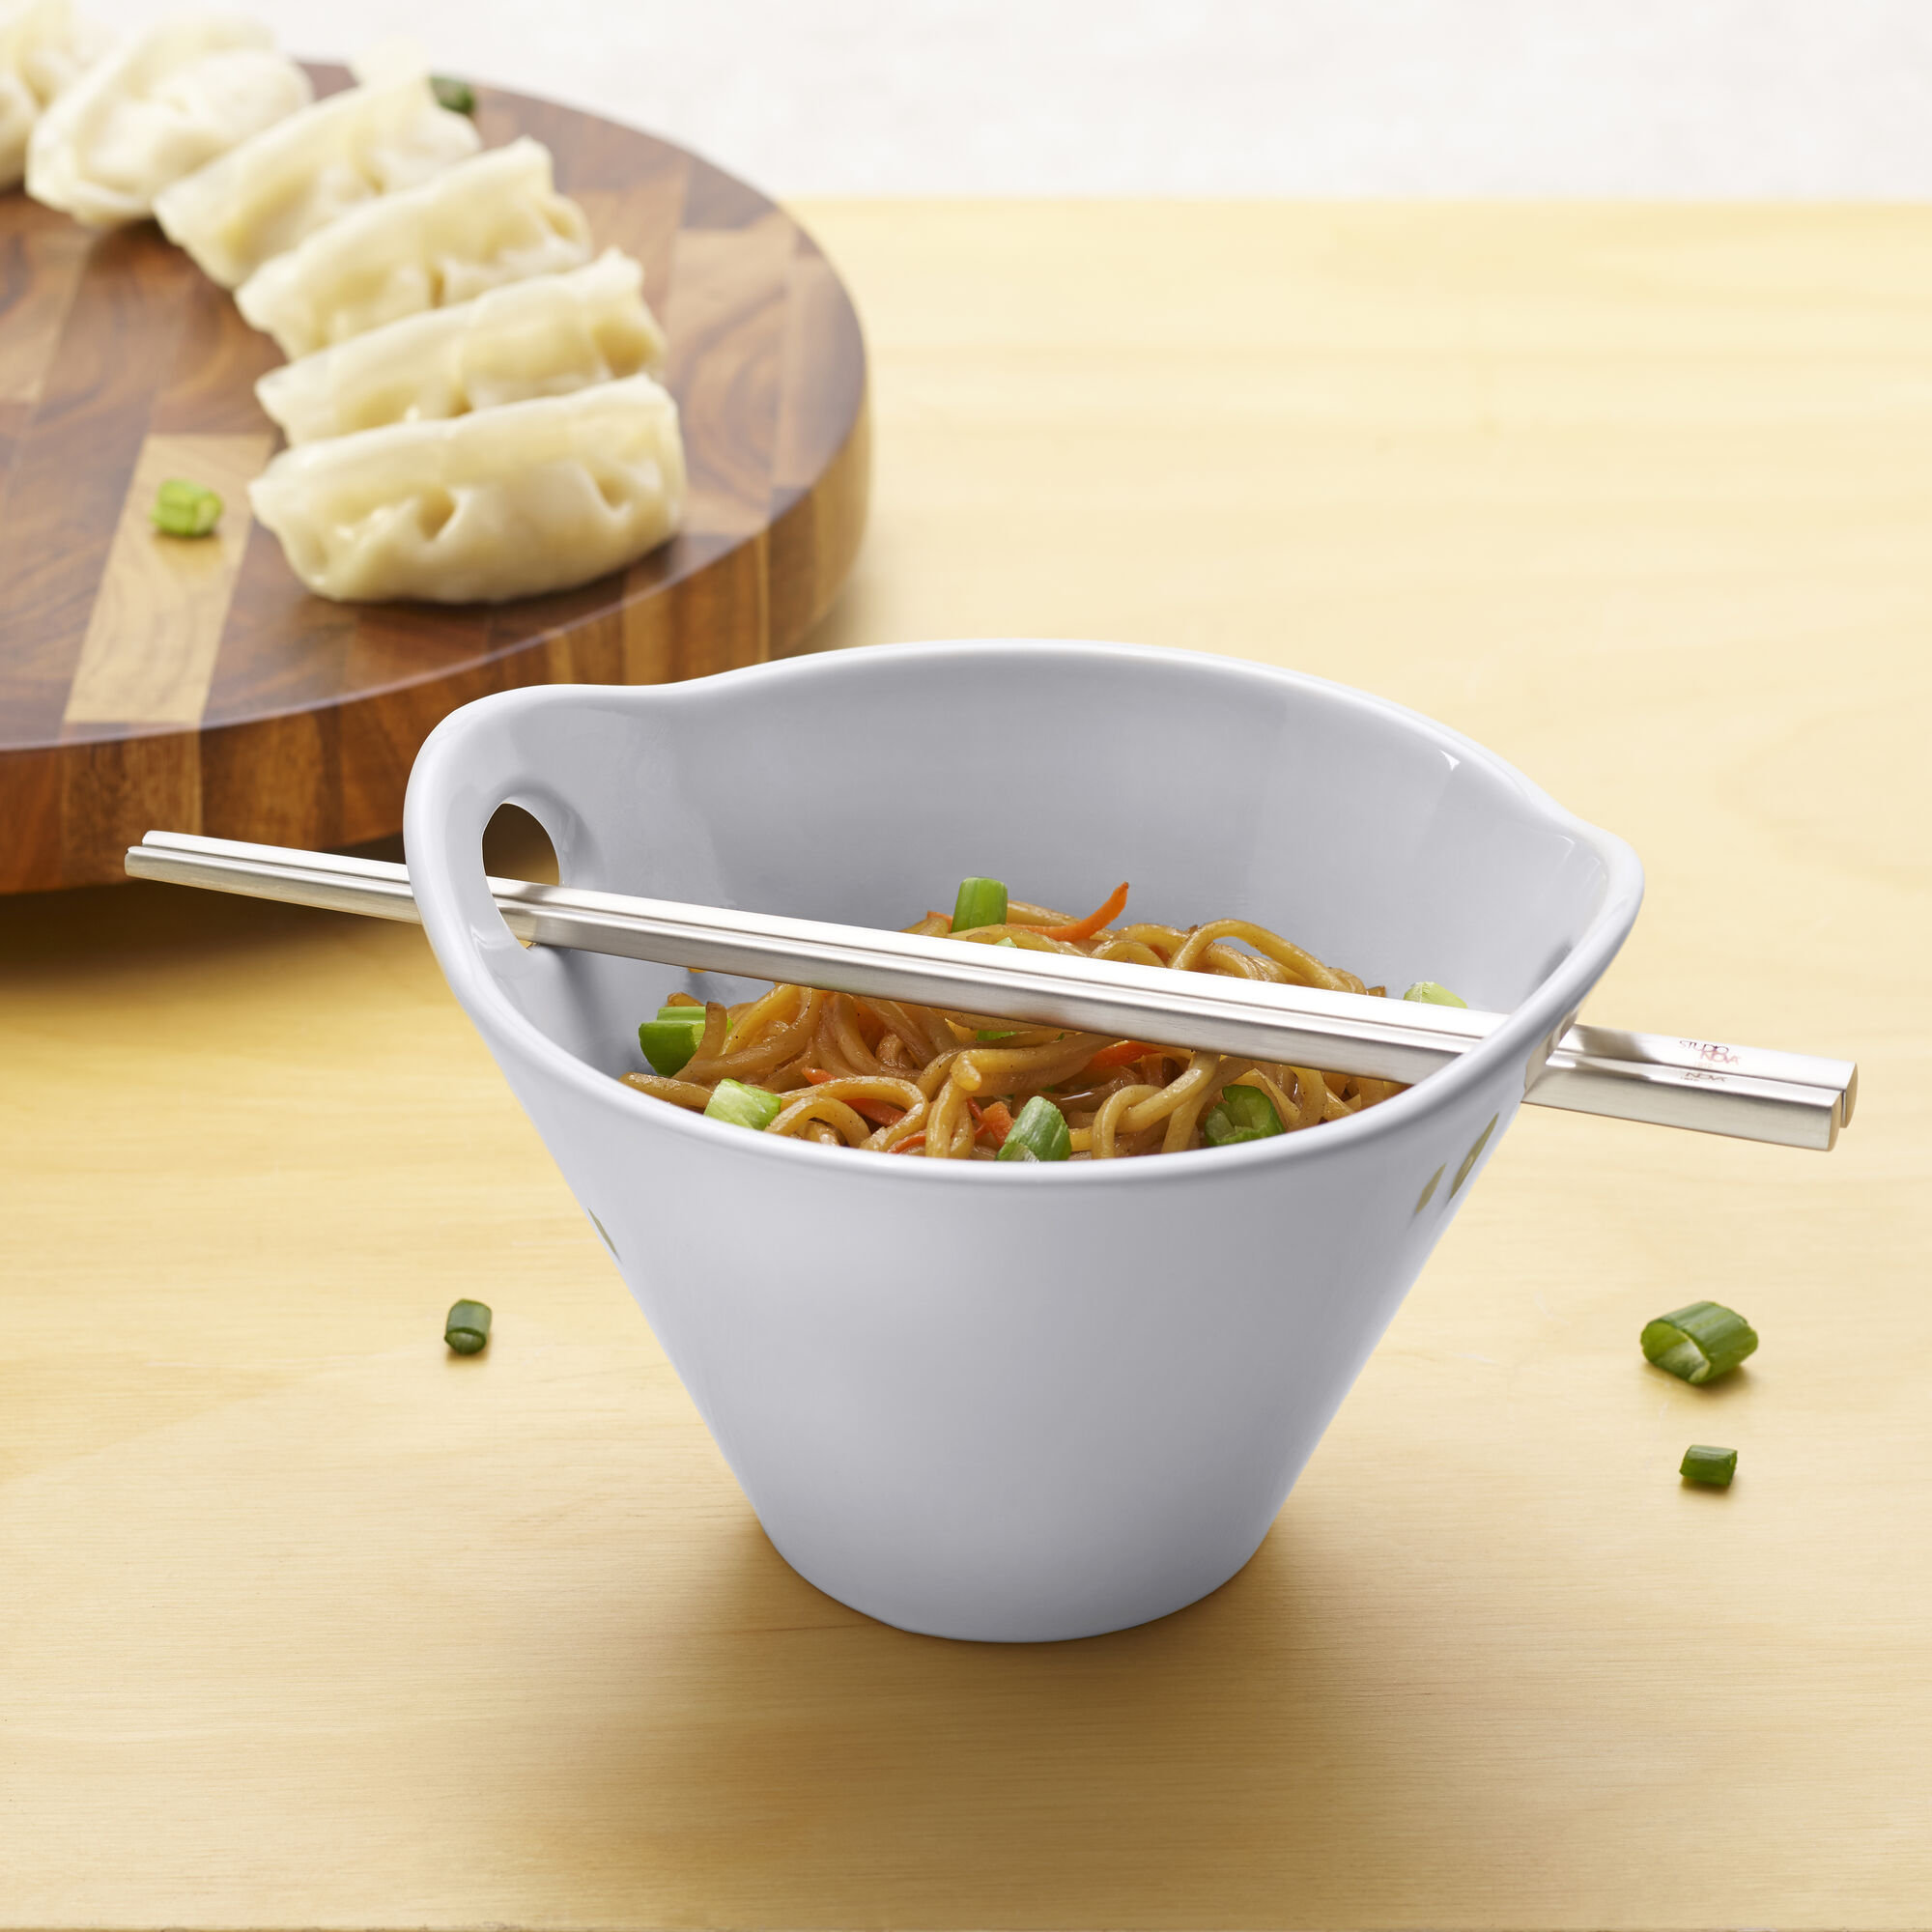 https://assets.wfcdn.com/im/52520674/compr-r85/2494/249467958/studio-nova-noodle-bowl-set-wchopsticks-service-for-2.jpg